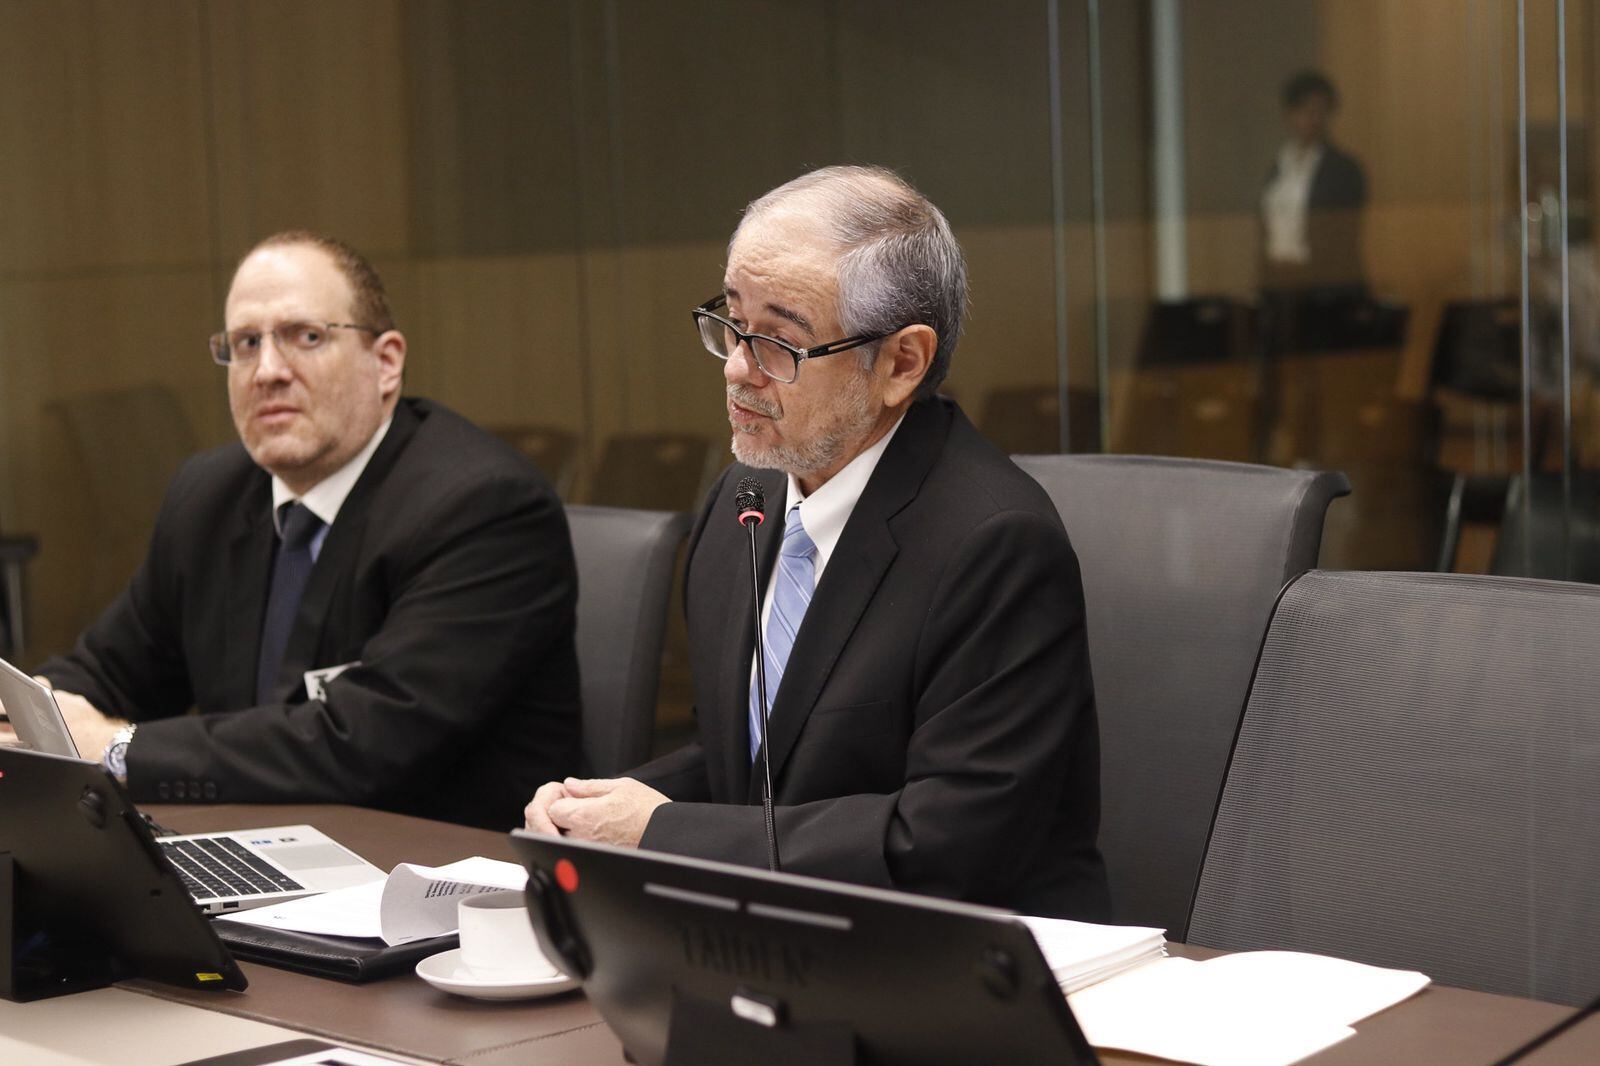 El gerente del Banco Nacional, Bernardo Alfaro, compareció este jueves 30 de noviembre en la Comisión de Control de Ingreso y Gasto Público de la Asamblea Legislativa. Fotografía: